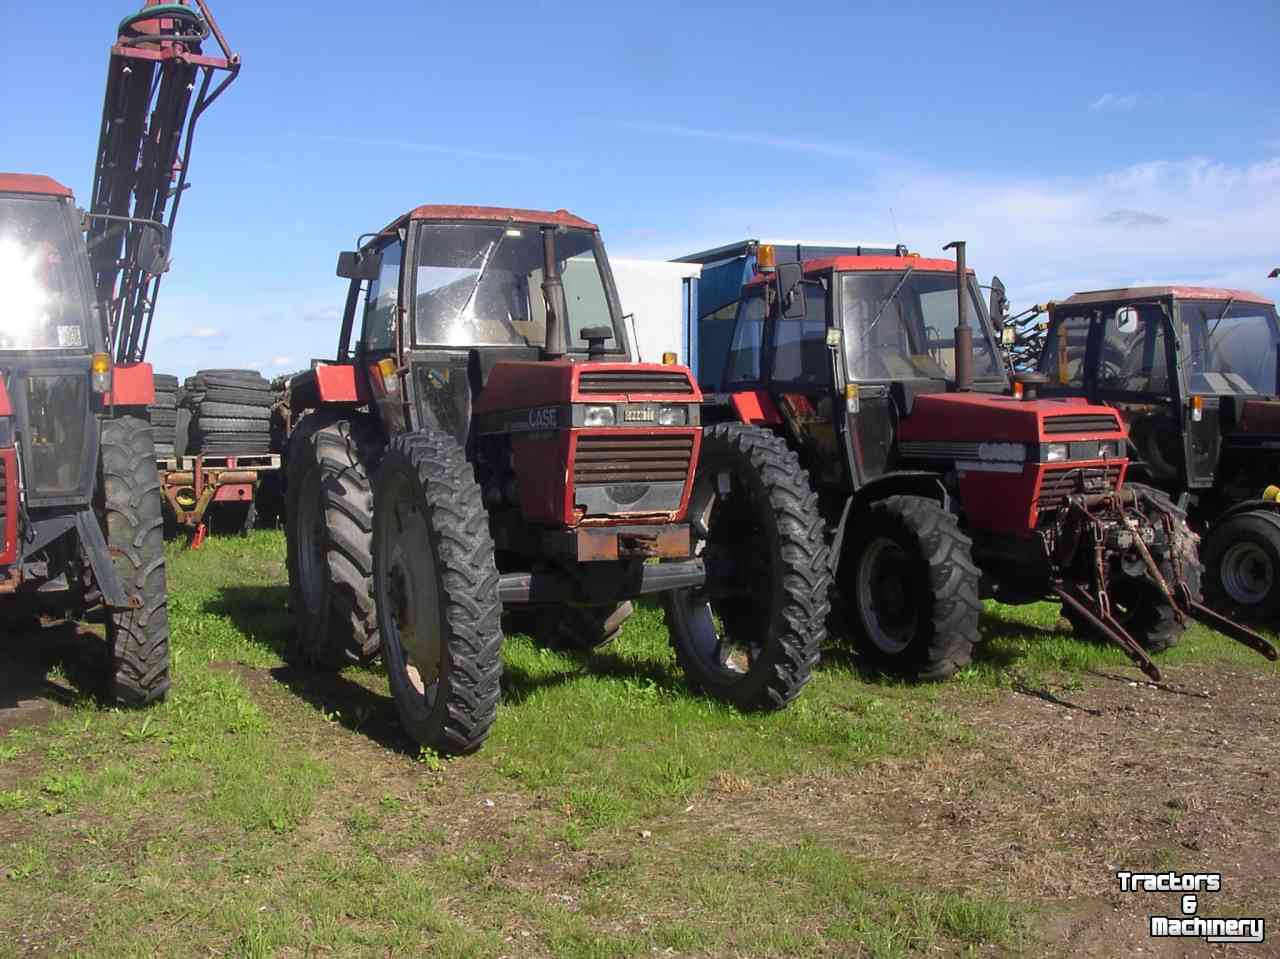 Tractors Case Diverse specials